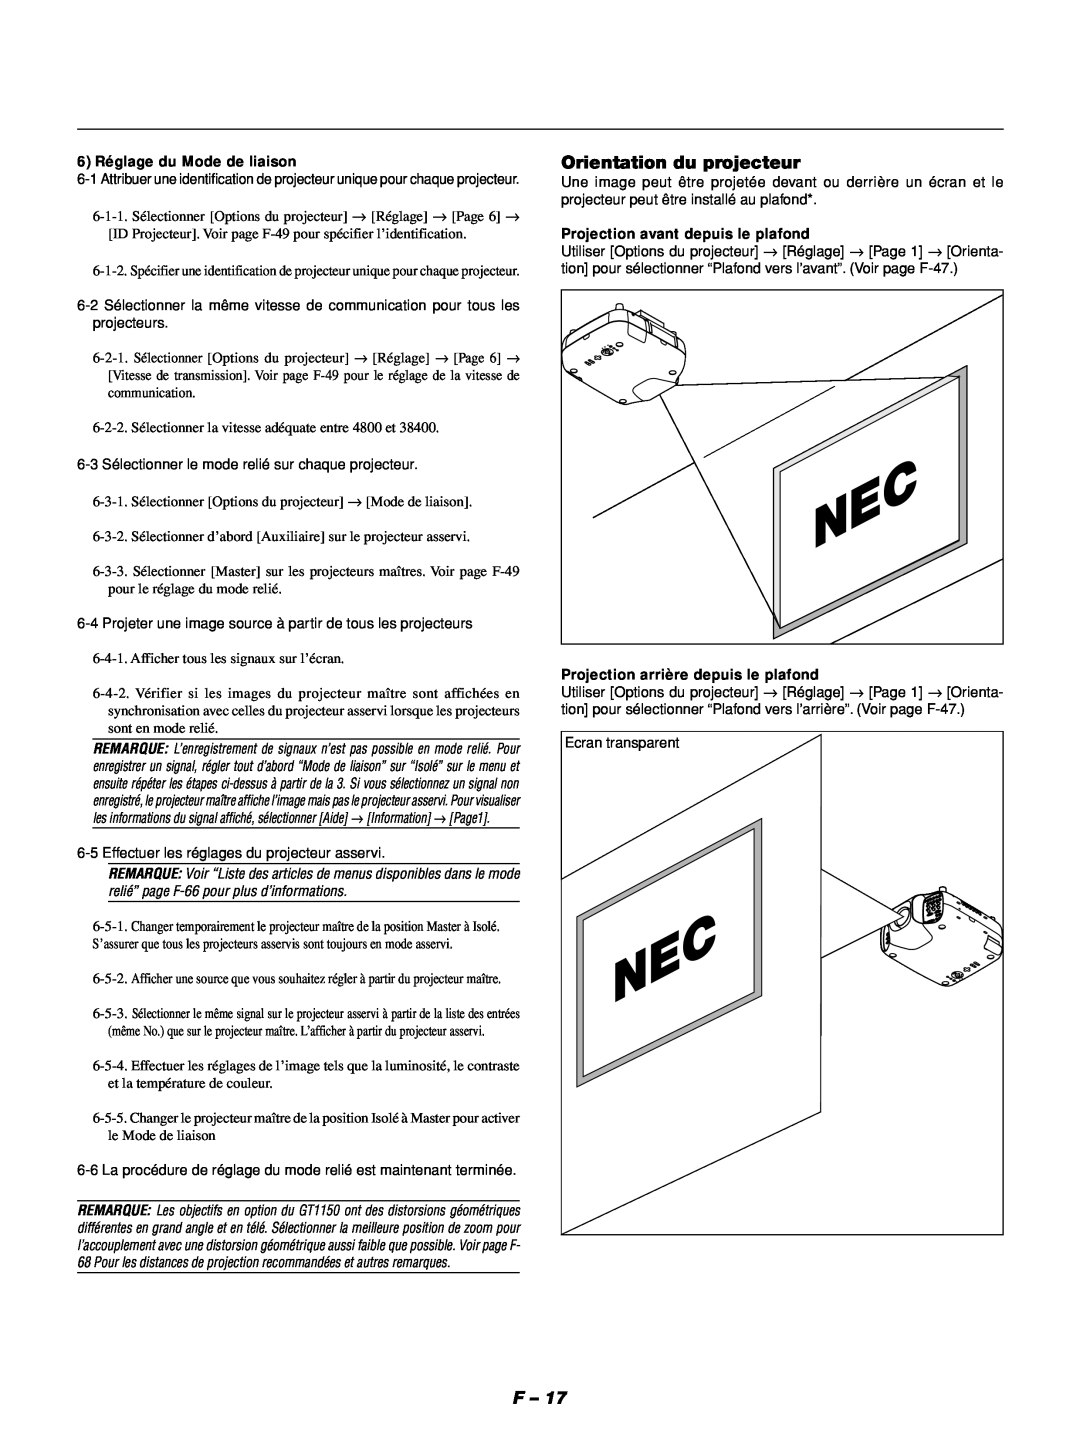 NEC GT1150 manuel dutilisation Orientation du projecteur, 6 Réglage du Mode de liaison, Projection avant depuis le plafond 